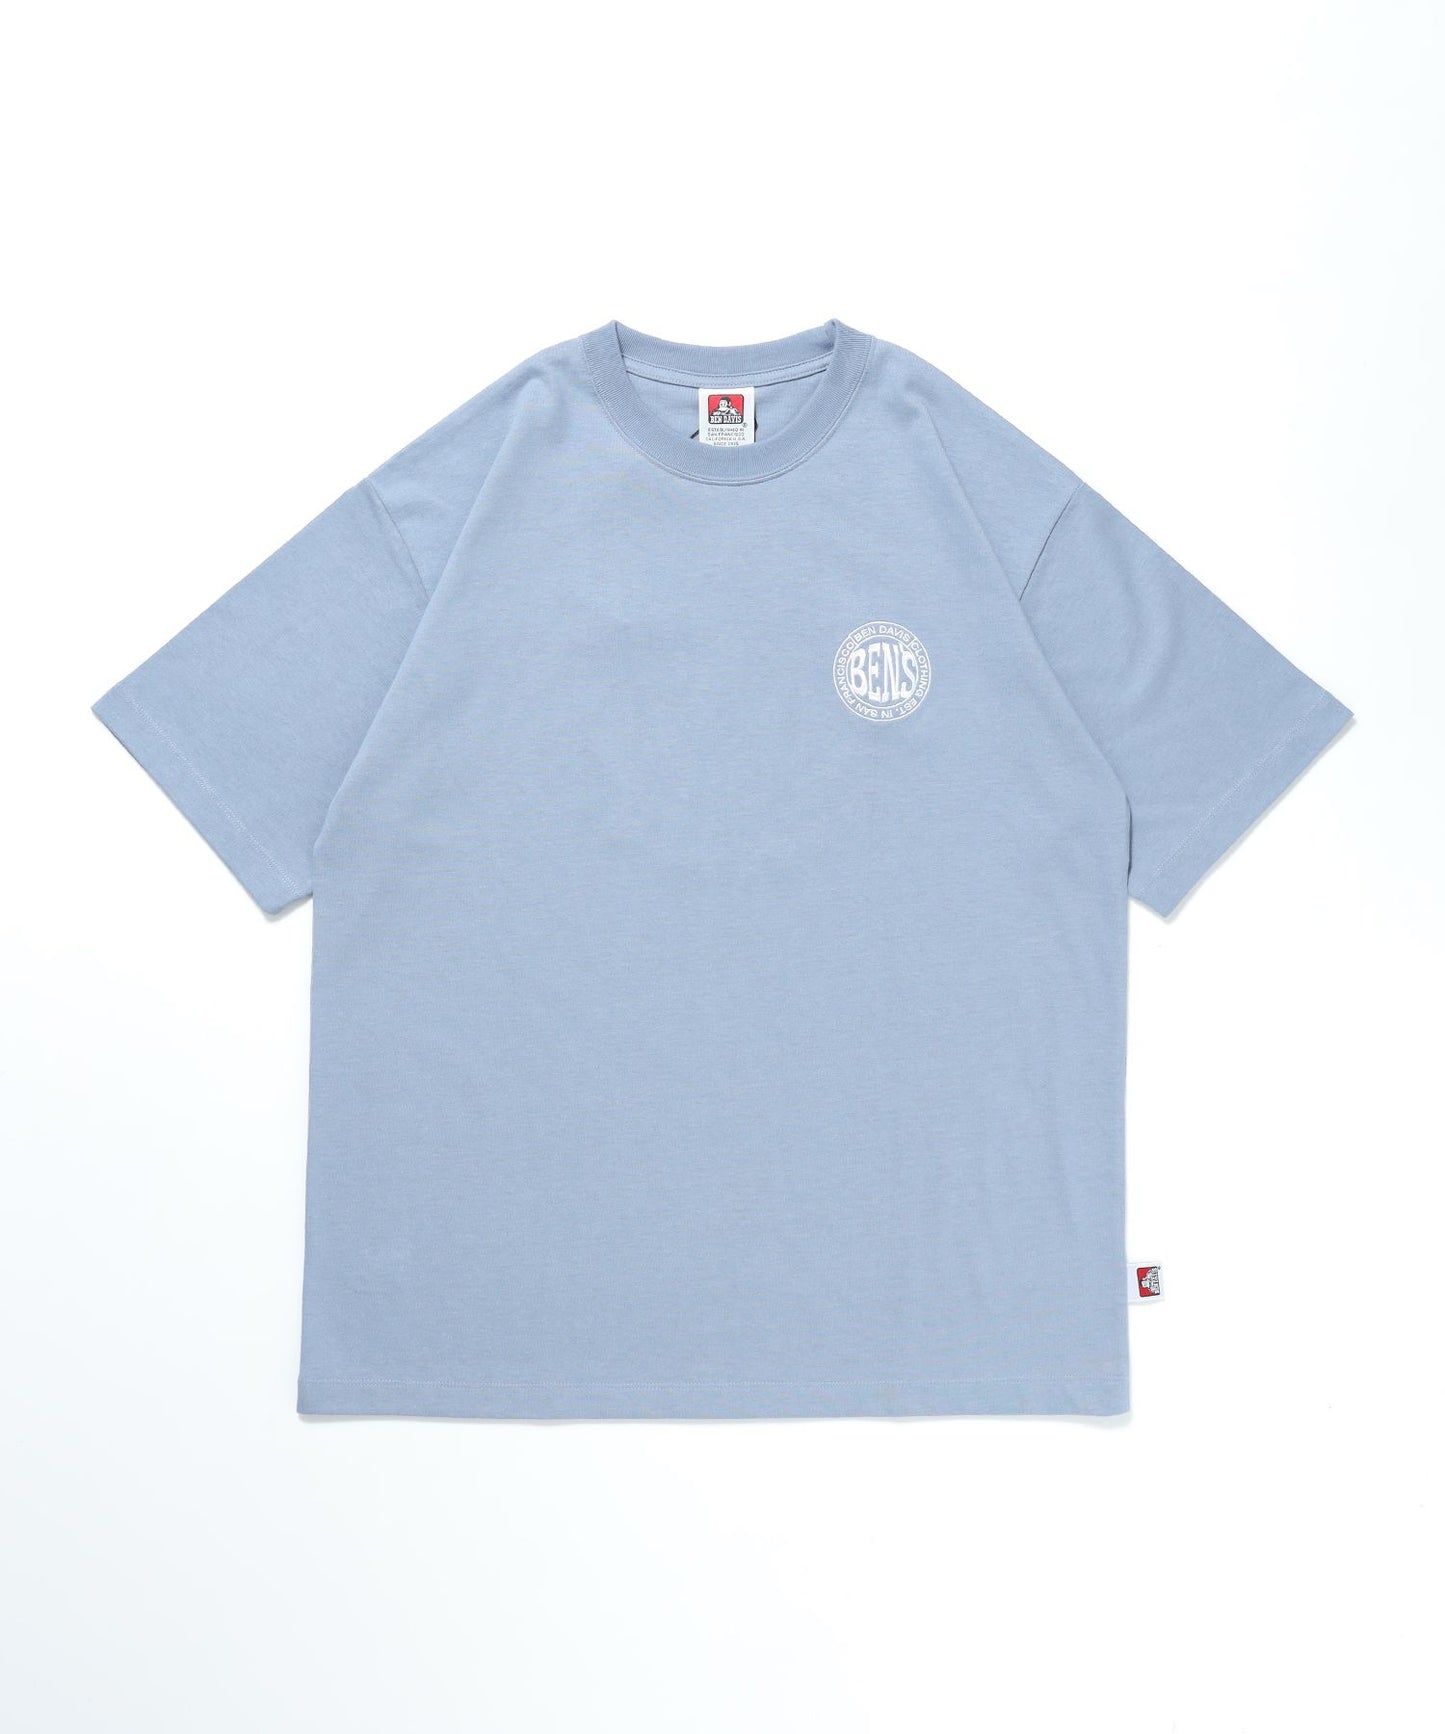 【BEN DAVIS（ベンデイビス）】CIRCLE BEN‘S TEE / サークルロゴ Tシャツ 刺繍 半袖 シンプルロゴ ブルーグレー